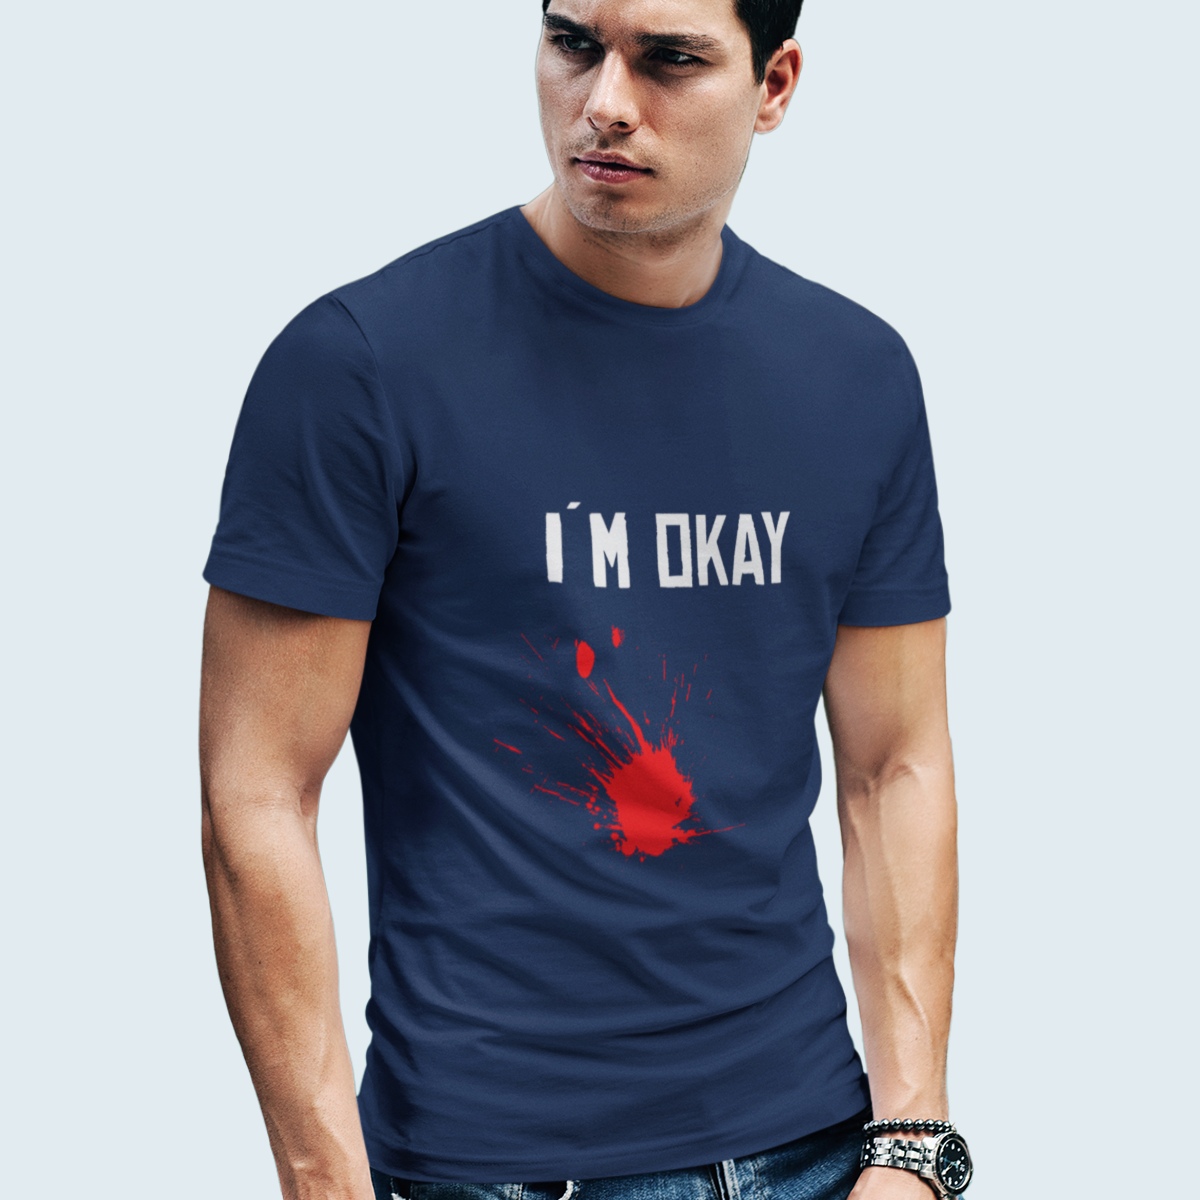 Veraangenamen Bemiddelen Vergelijken Grappig T-Shirt - I'm Okay & Bloedvlek | Dames & Heren